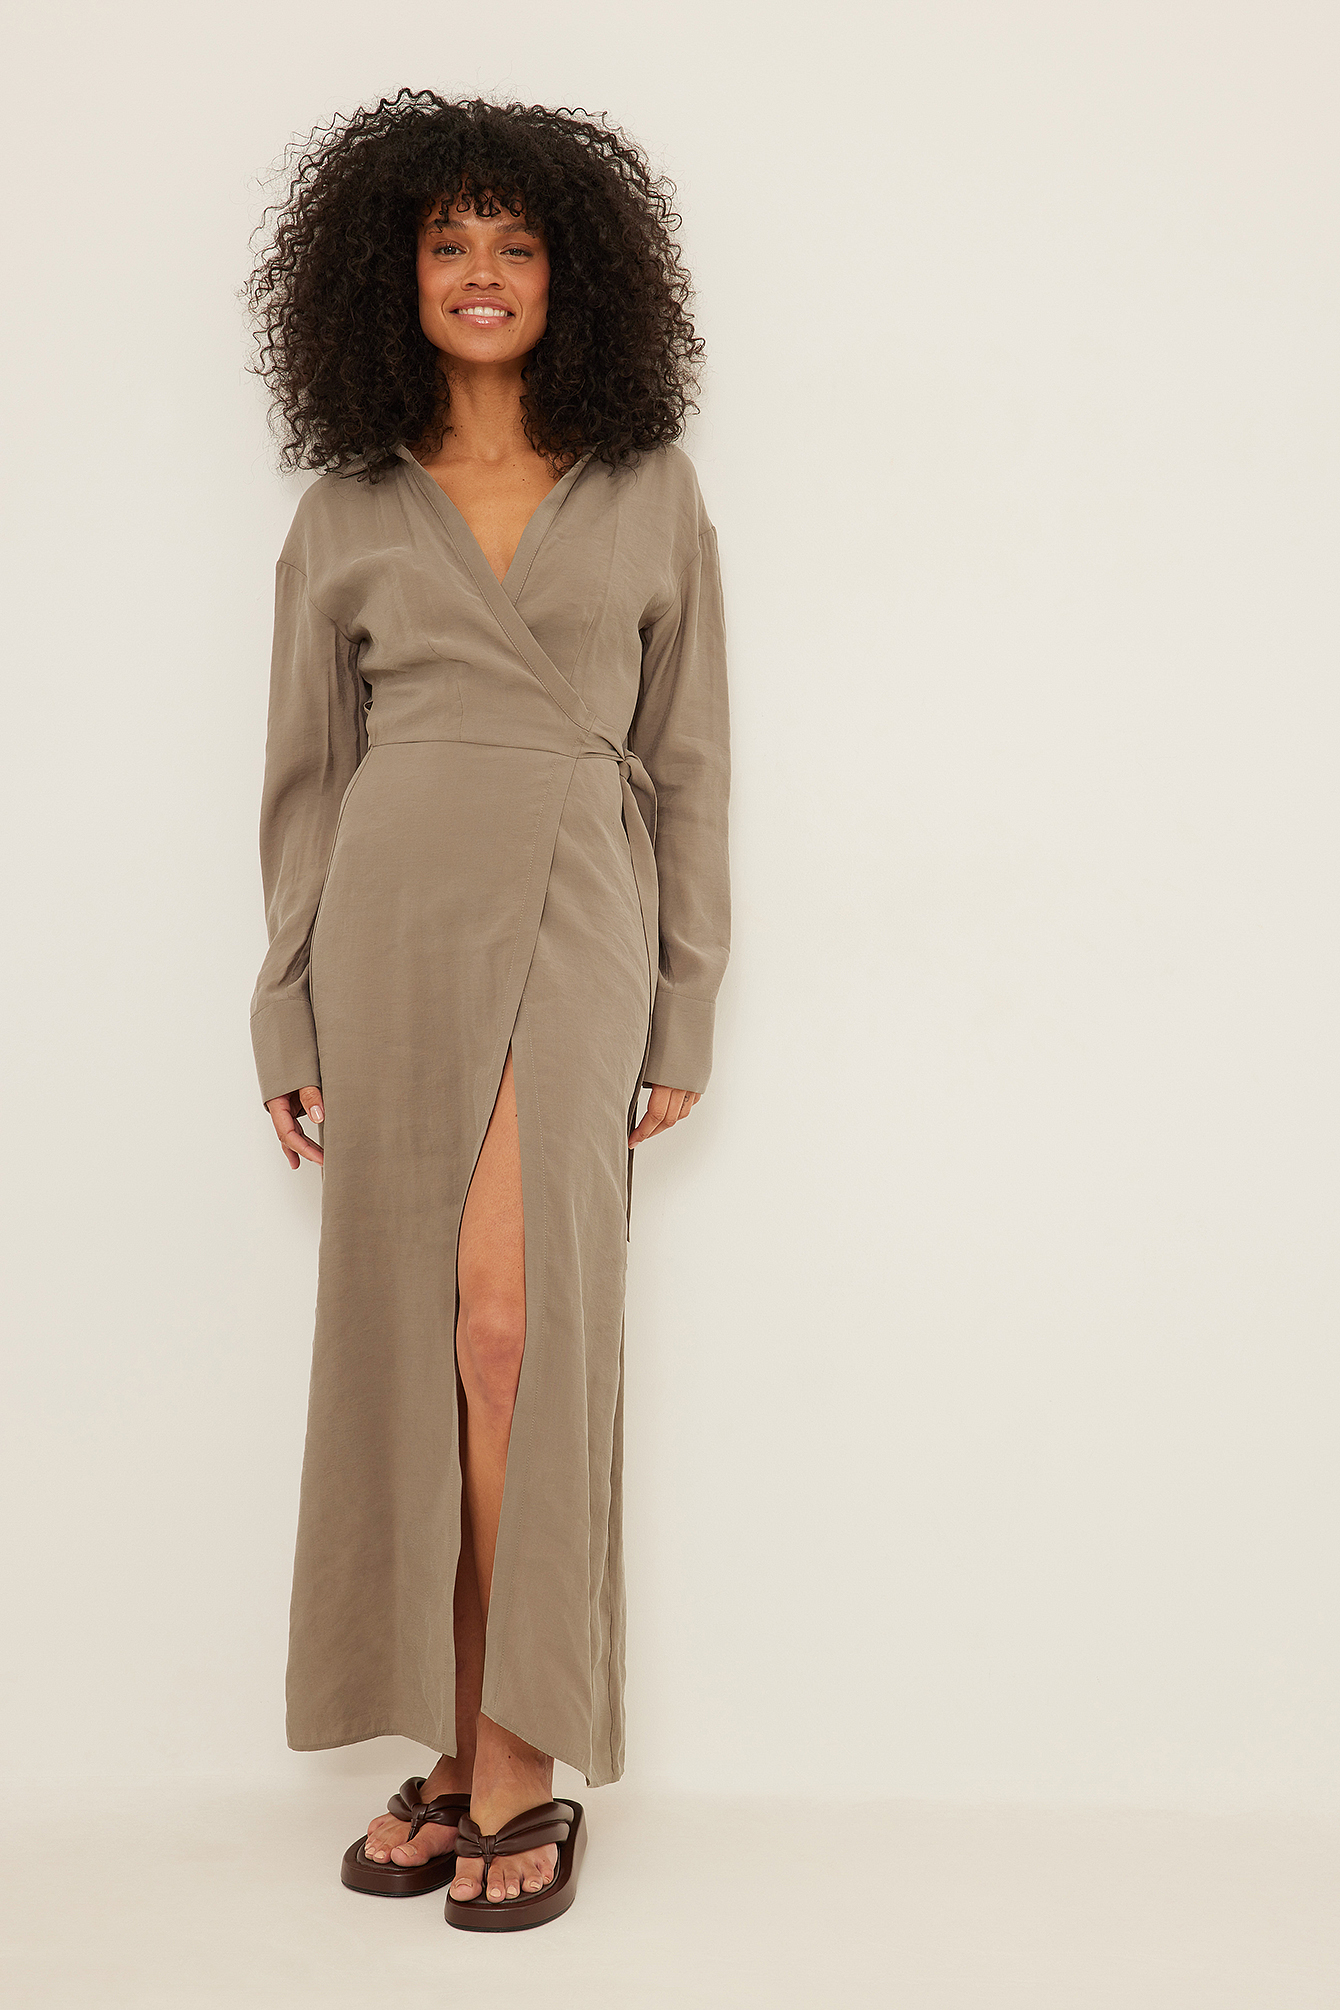 Wrap Dresses | Shop your wrap dress online | na-kd.com